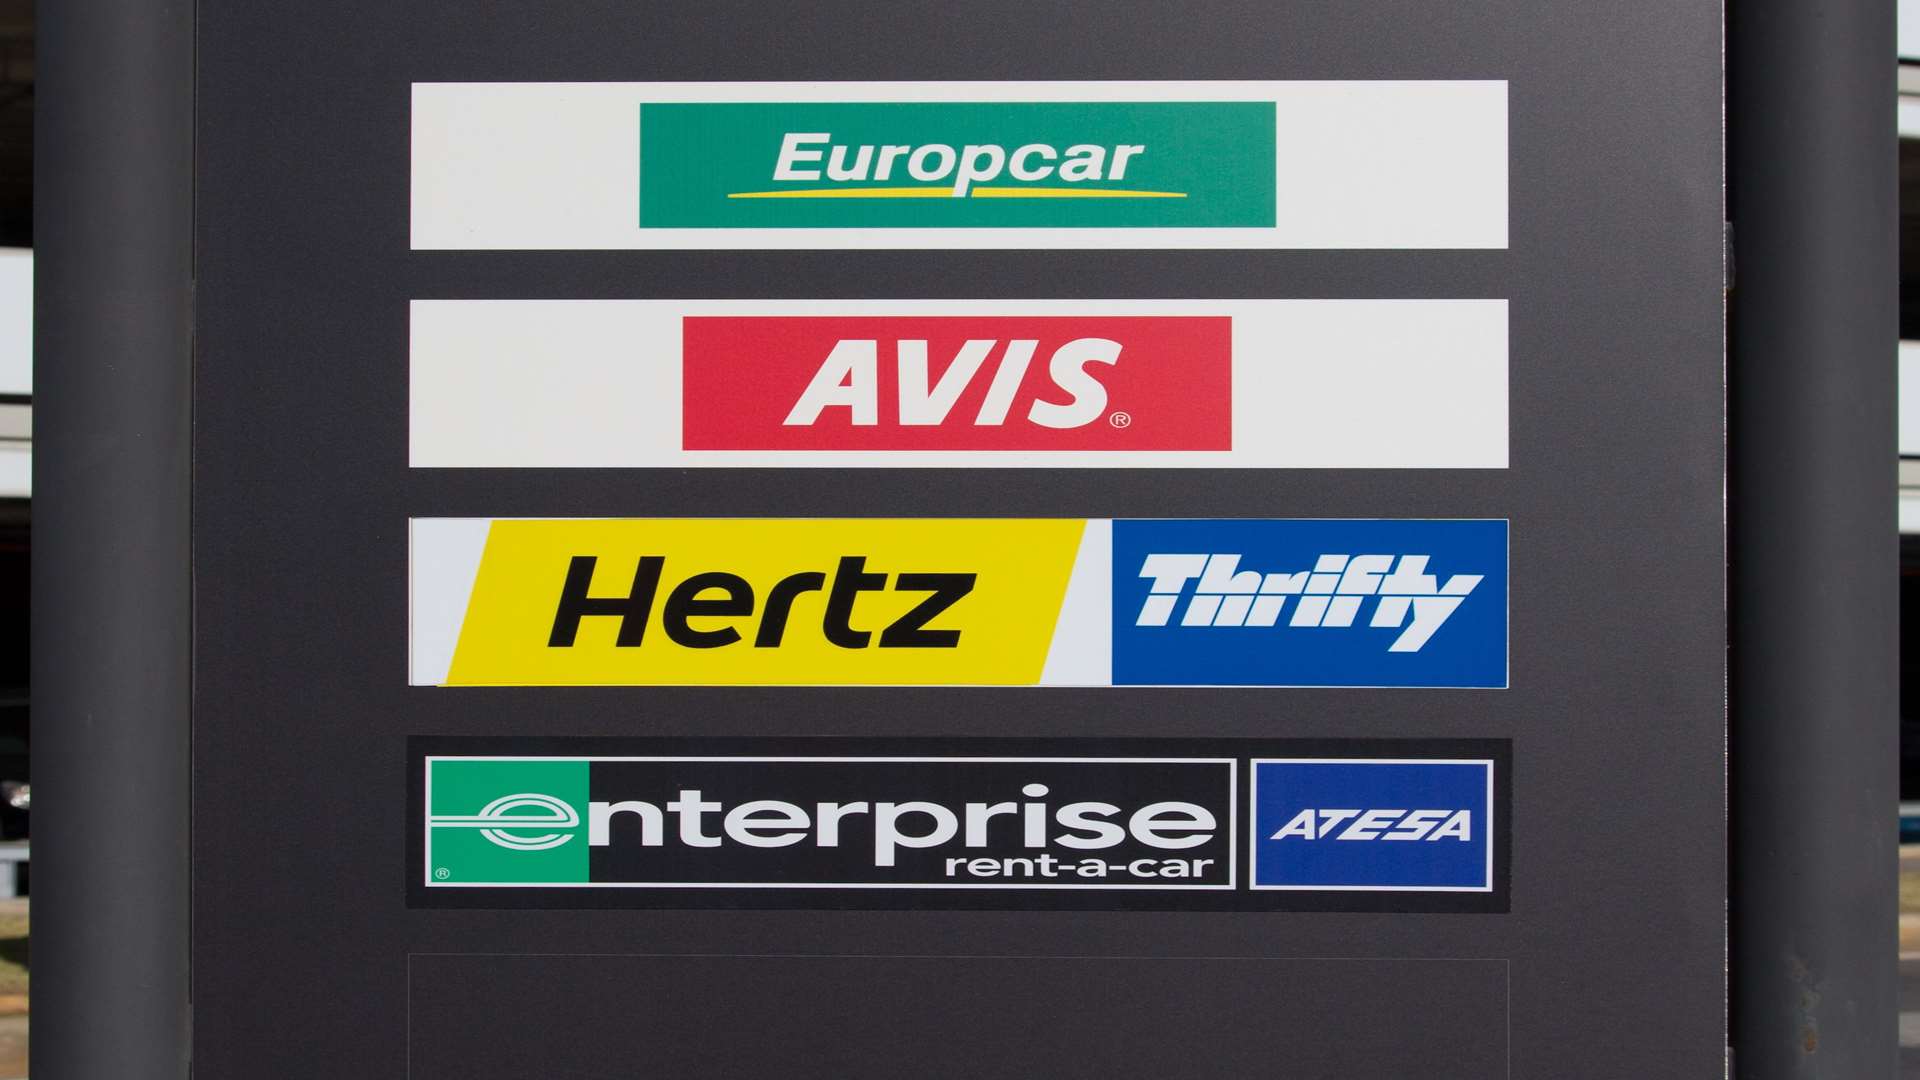 MyTripCar compares car rental companies across the globe